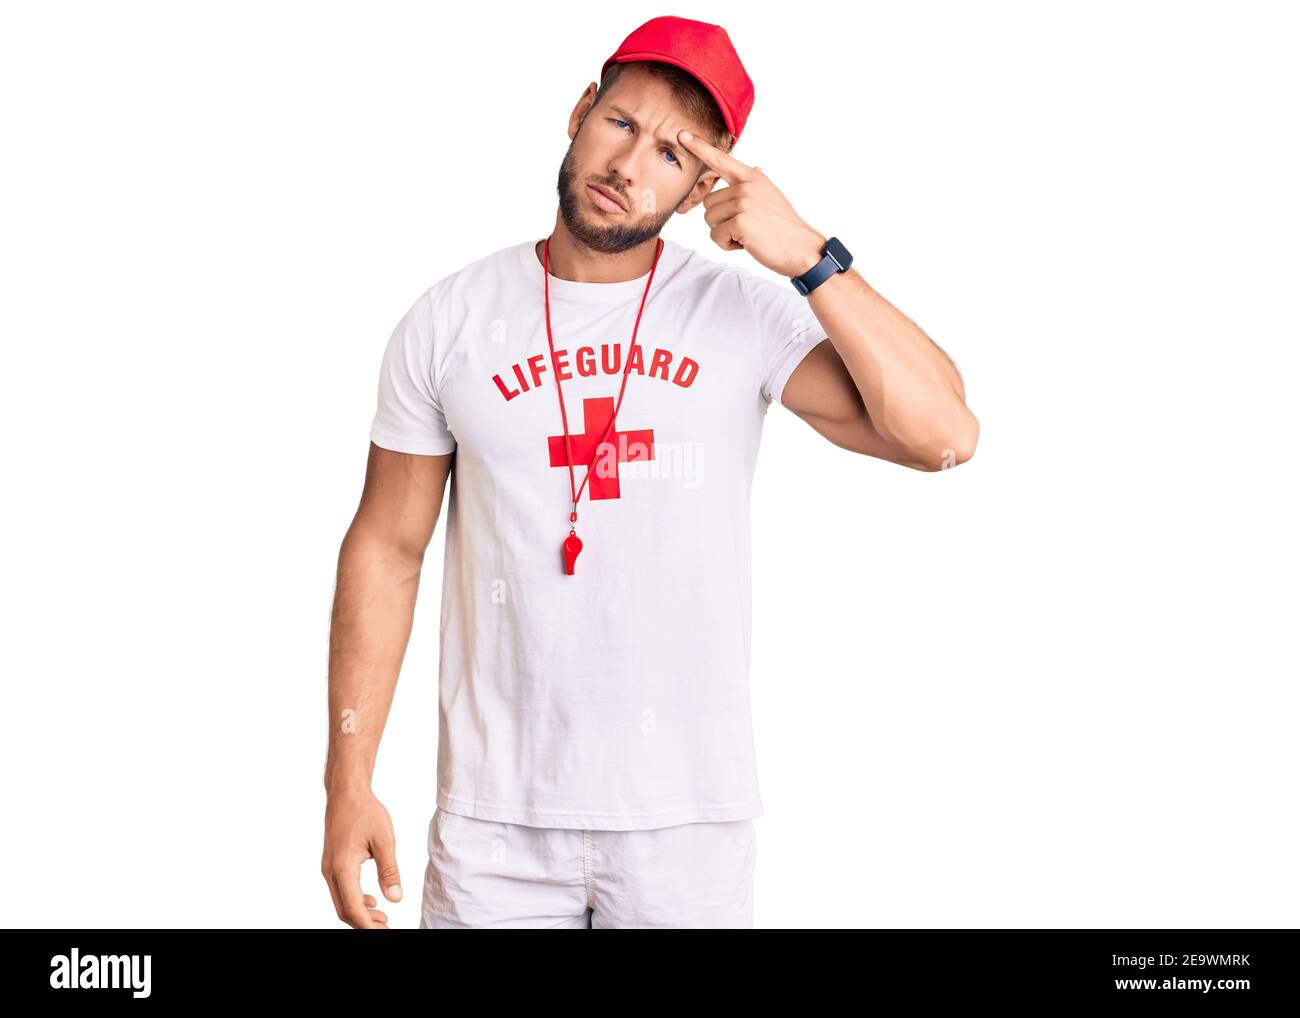 Junge kaukasischen Mann trägt Rettungsschwimmer T-Shirt mit Pfeife zeigt  unglücklich Pickel auf der Stirn, hässliche Infektion der Mitesser. Akne  und Haut probl Stockfotografie - Alamy